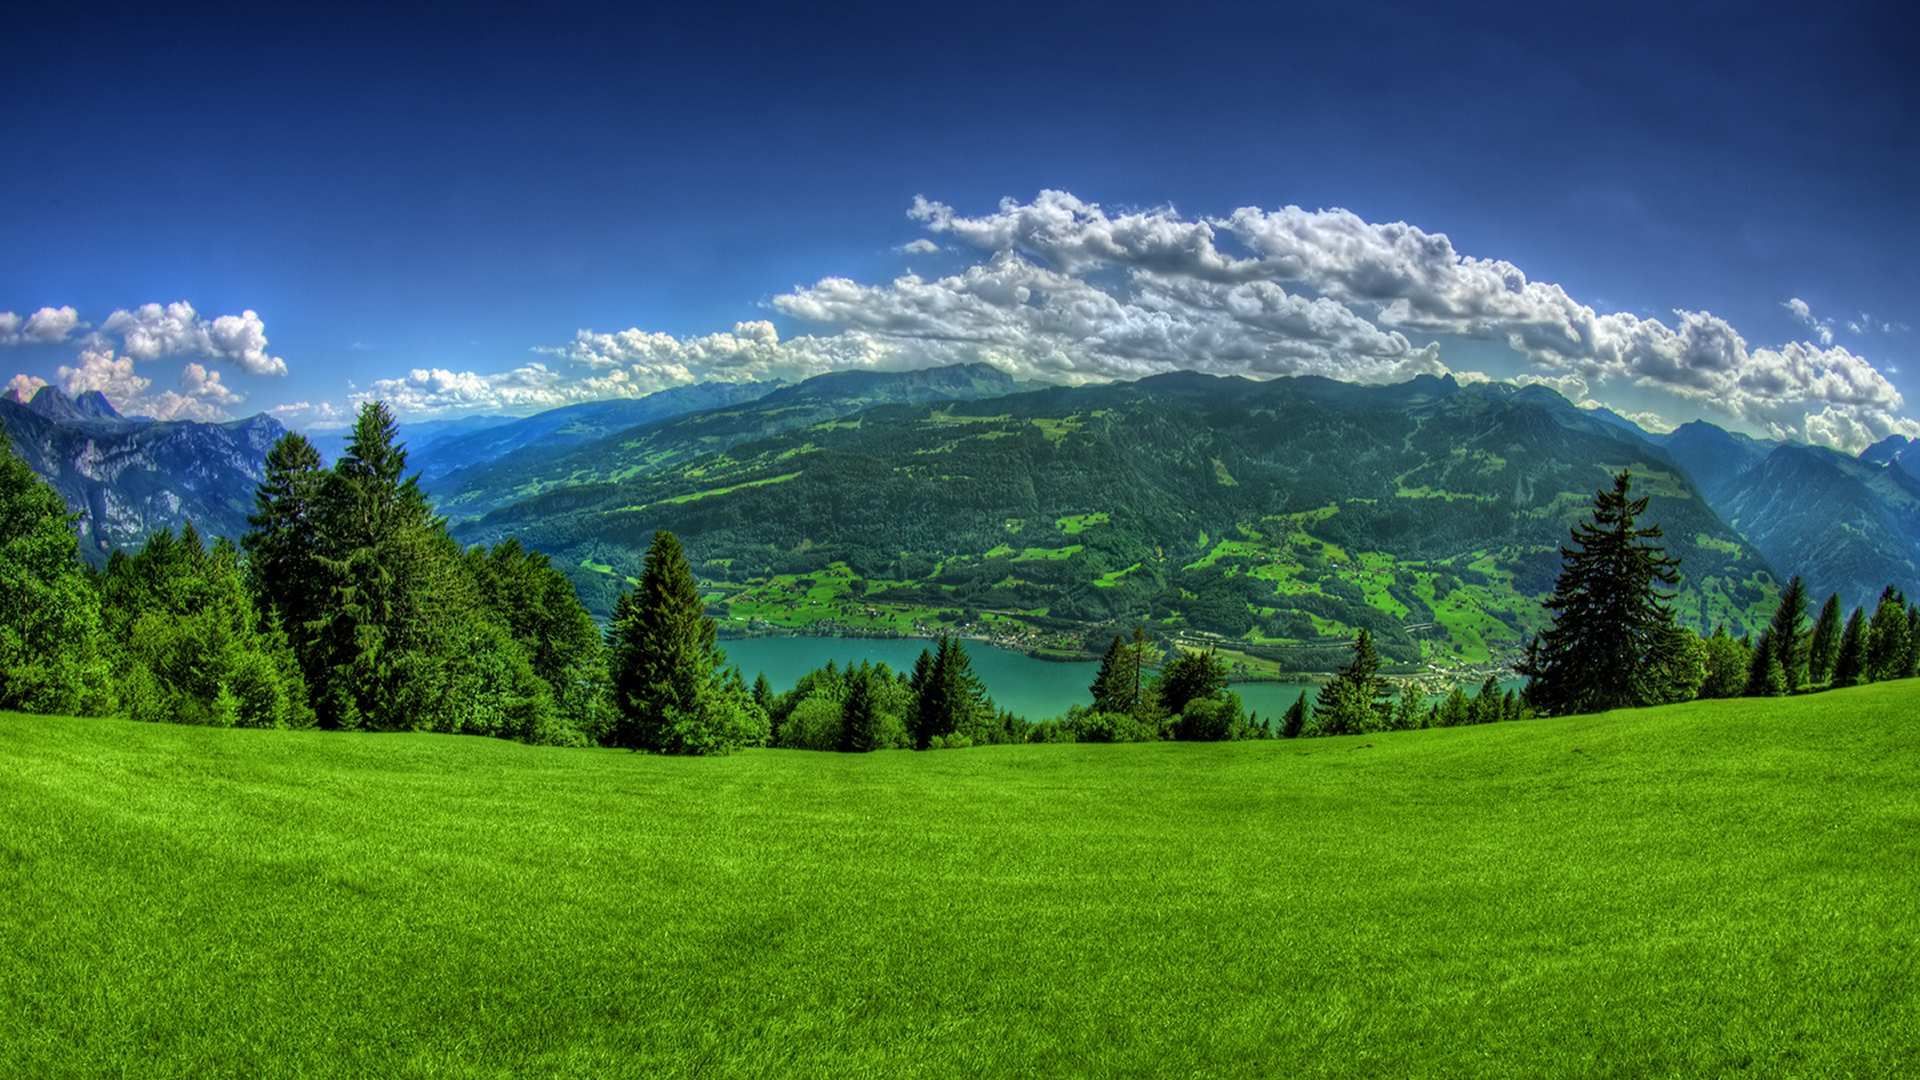 Switzerland. Beautiful nature wallpaper, HD nature wallpaper, Landscape wallpaper